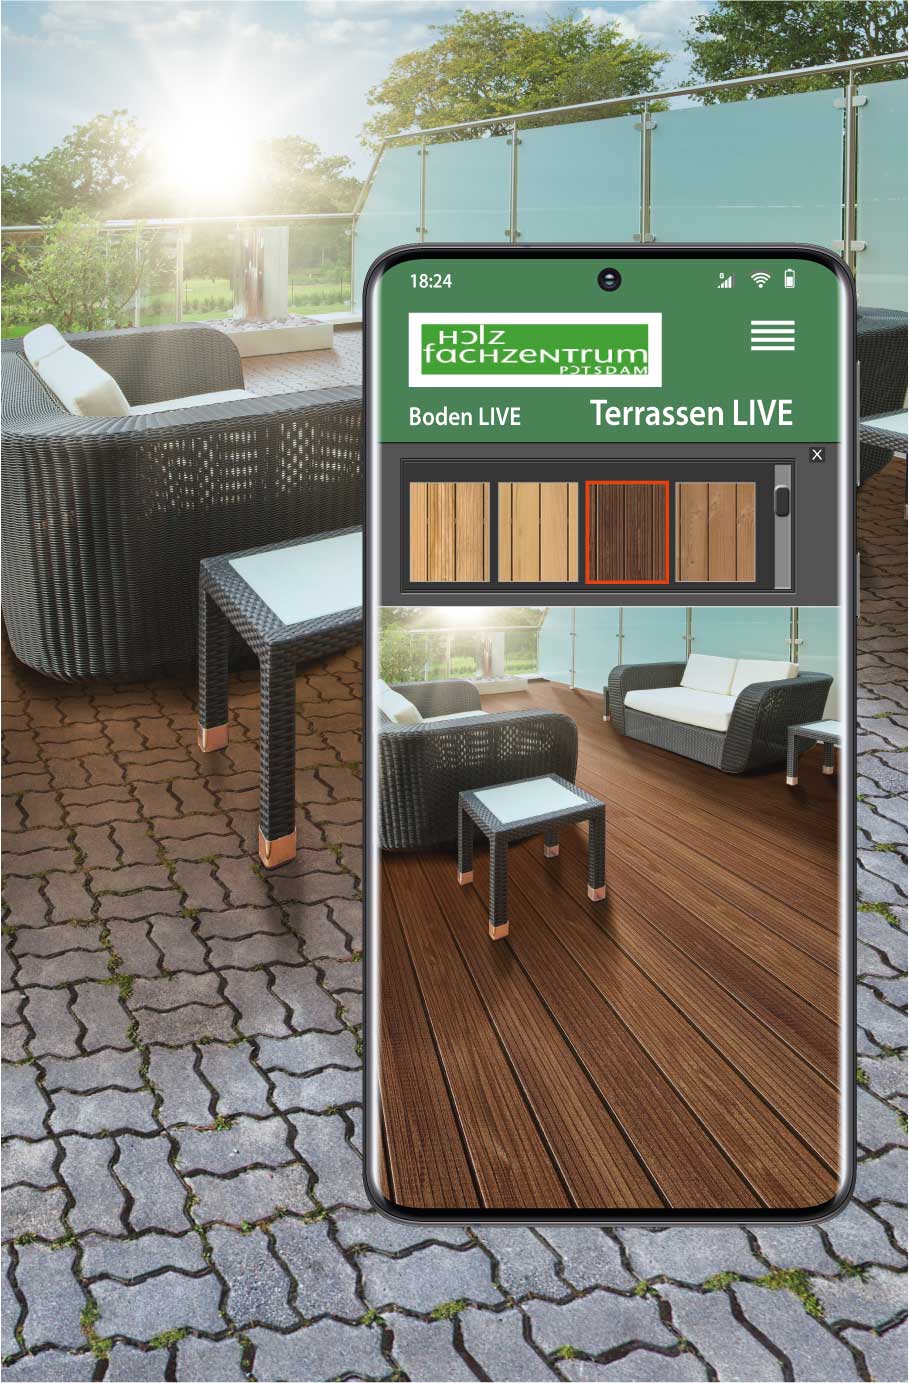 Smartphone mit Ansicht einer Terrasse - nutzen Sie Terrasse LIVE vom Holzfachzentrum Potsdam